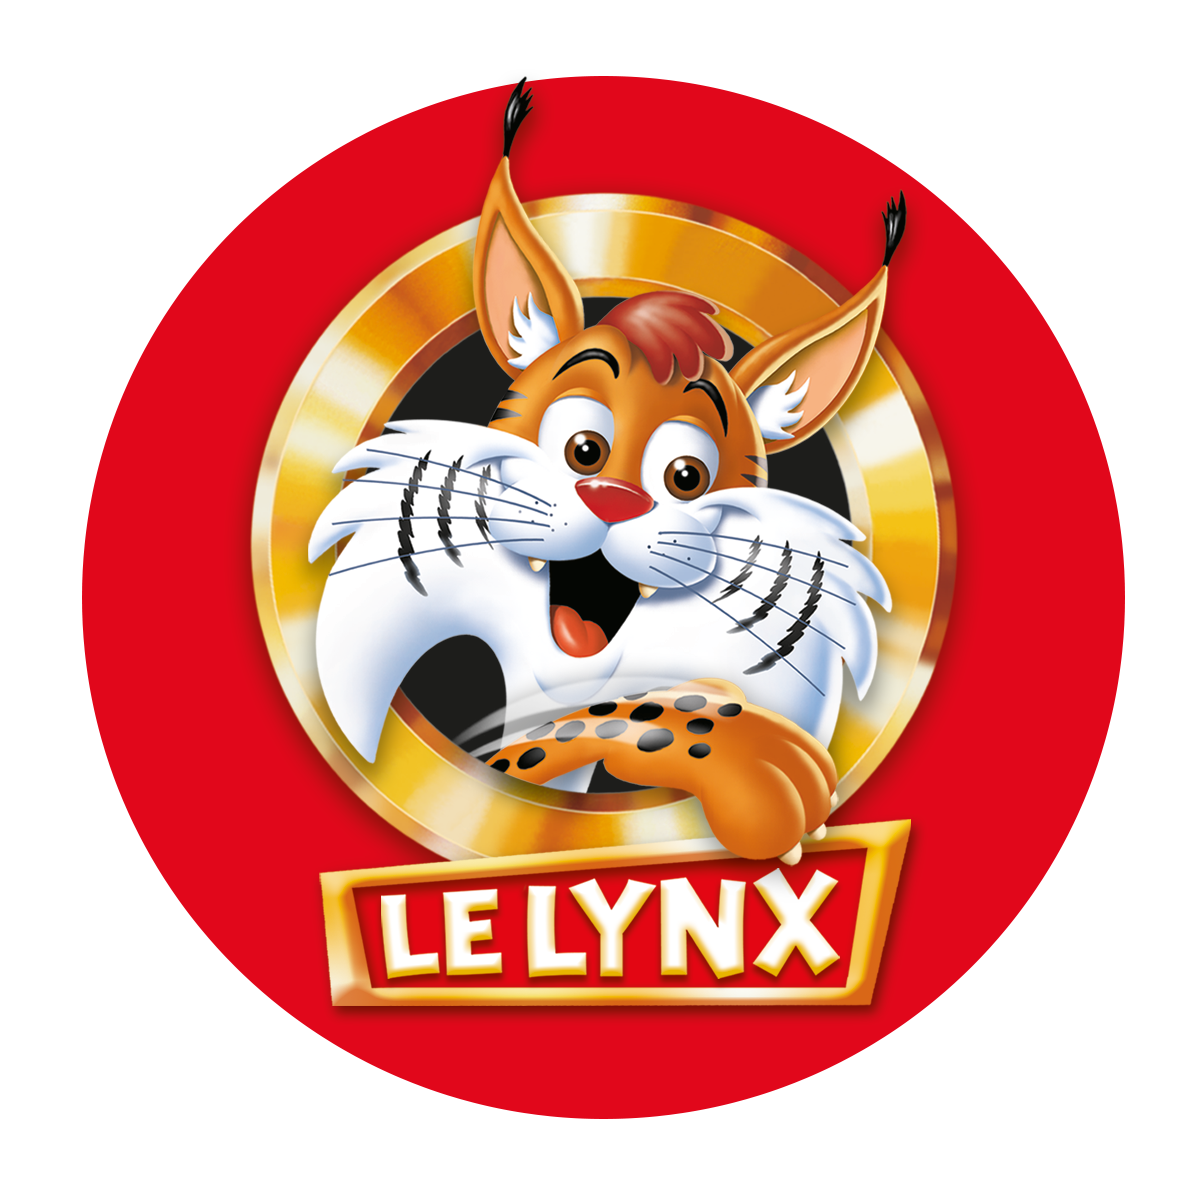 Acheter Le Lynx 300 images - pour les plus petits - Educa Borras 